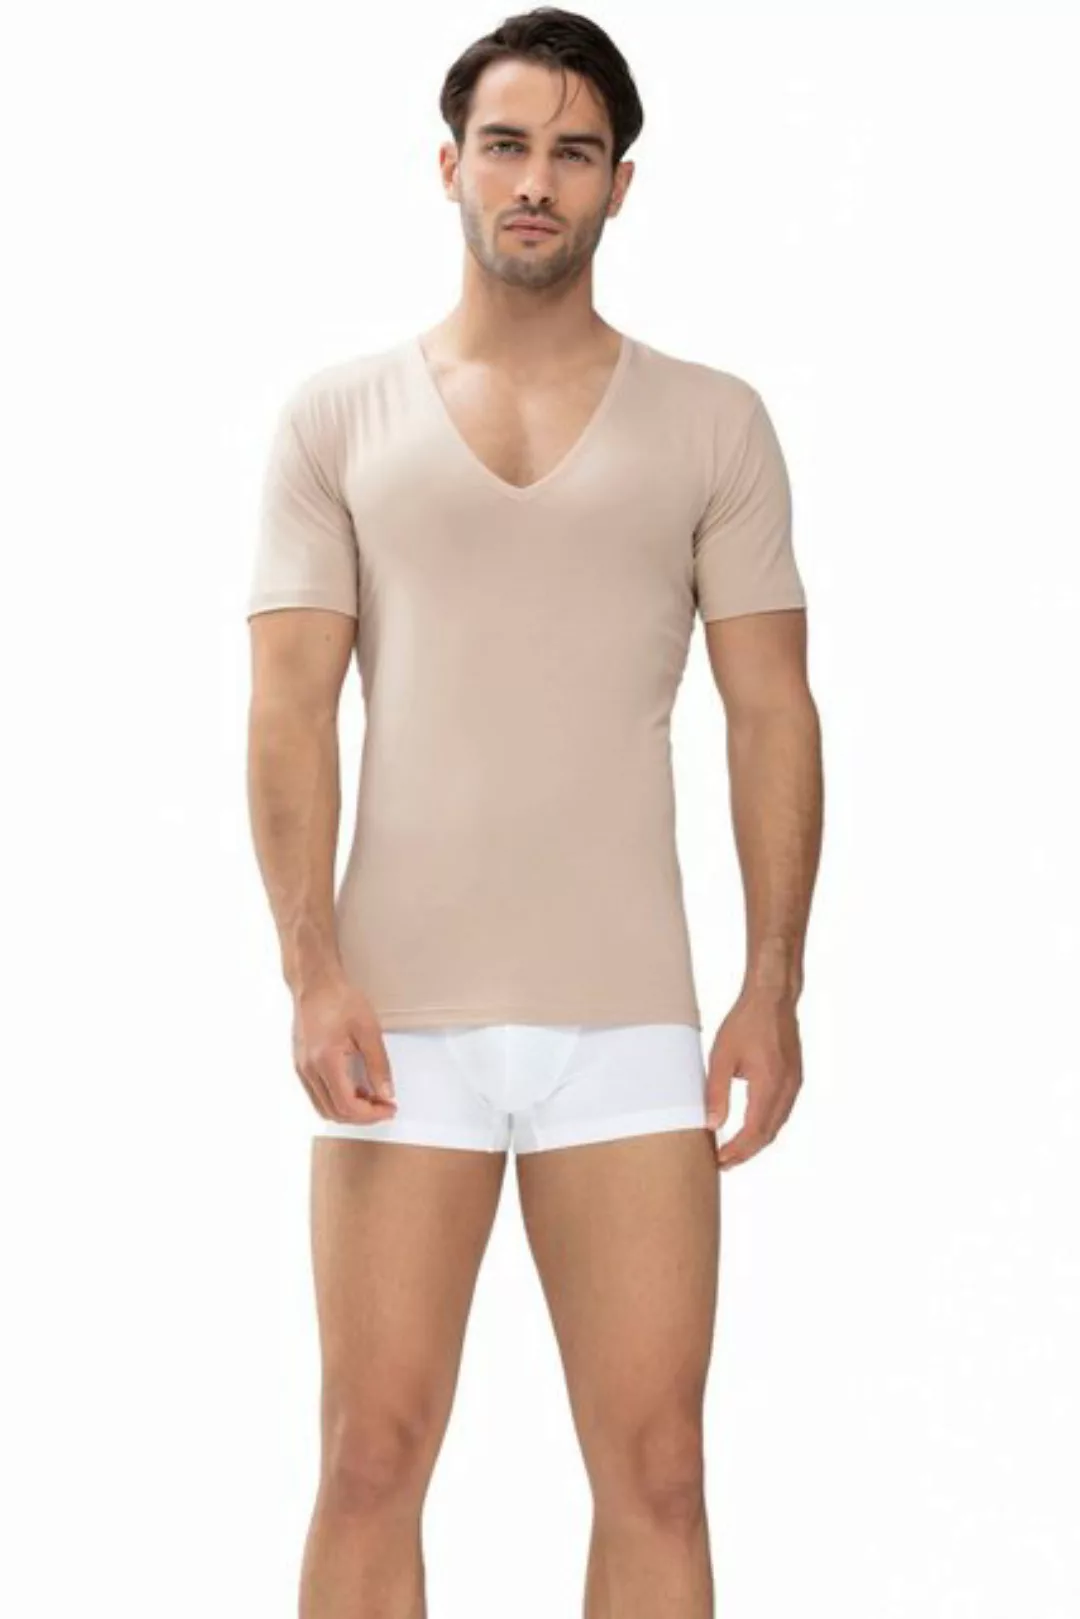 Mey T-Shirt Herren-Unterhemd, 1/2-Arm "Dry Cotton" Single-Jersey Uni günstig online kaufen